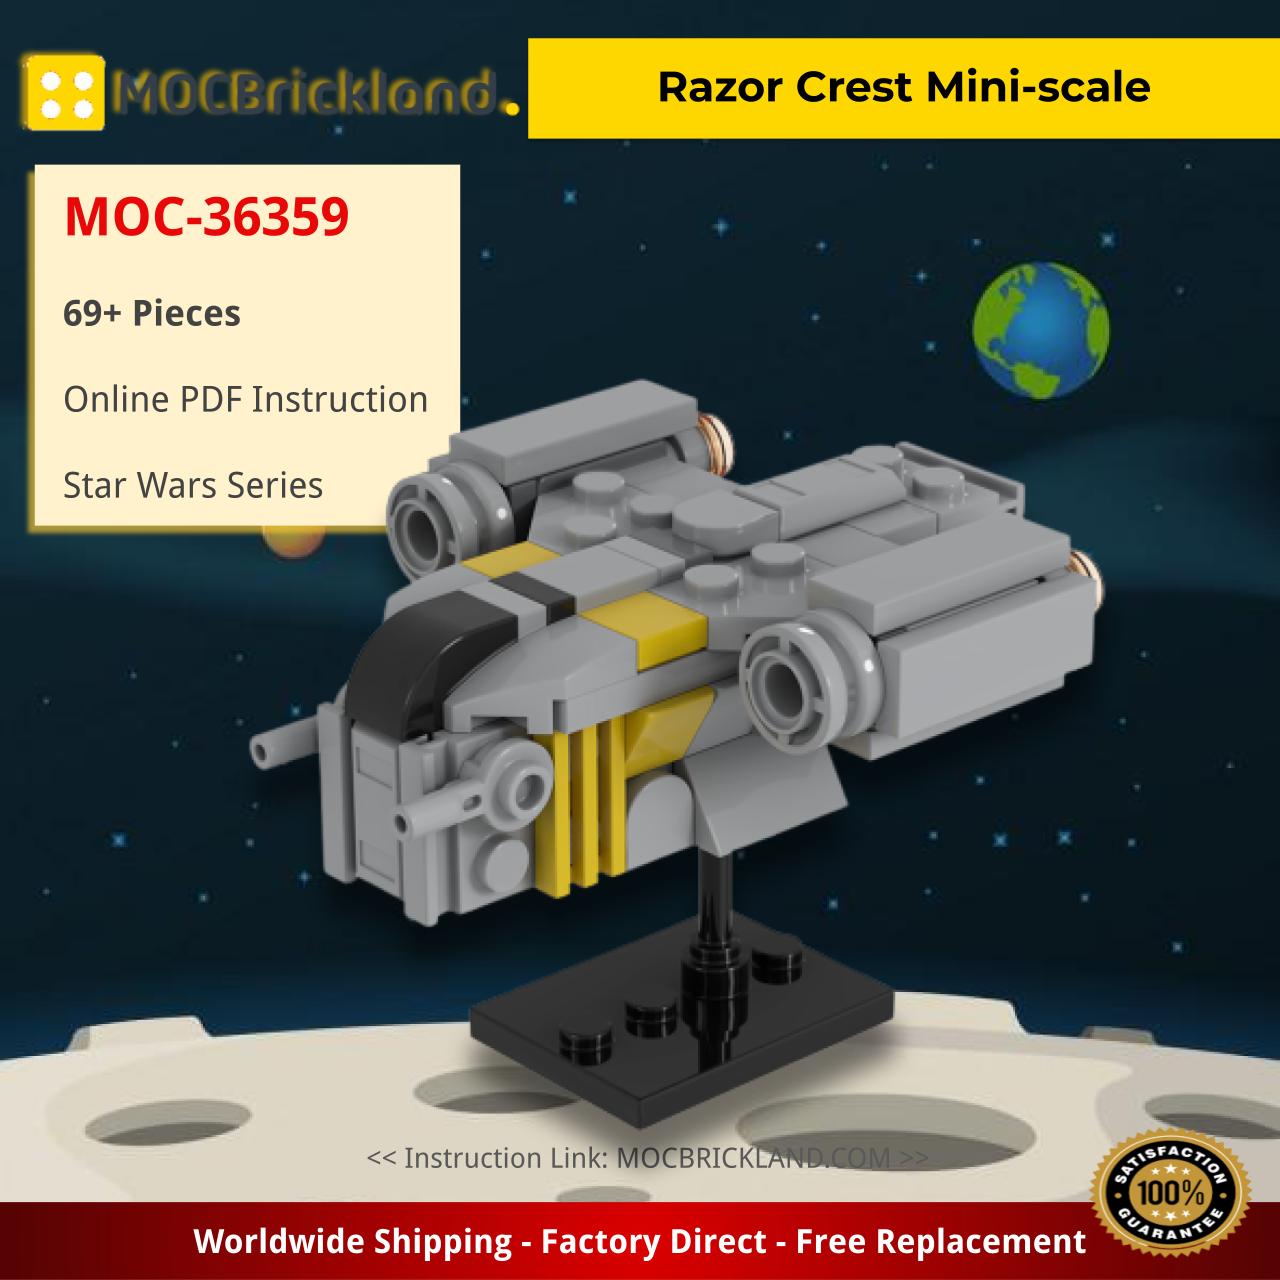 MOCBRICKLAND MOC-36359 Razor Crest Mini-scale